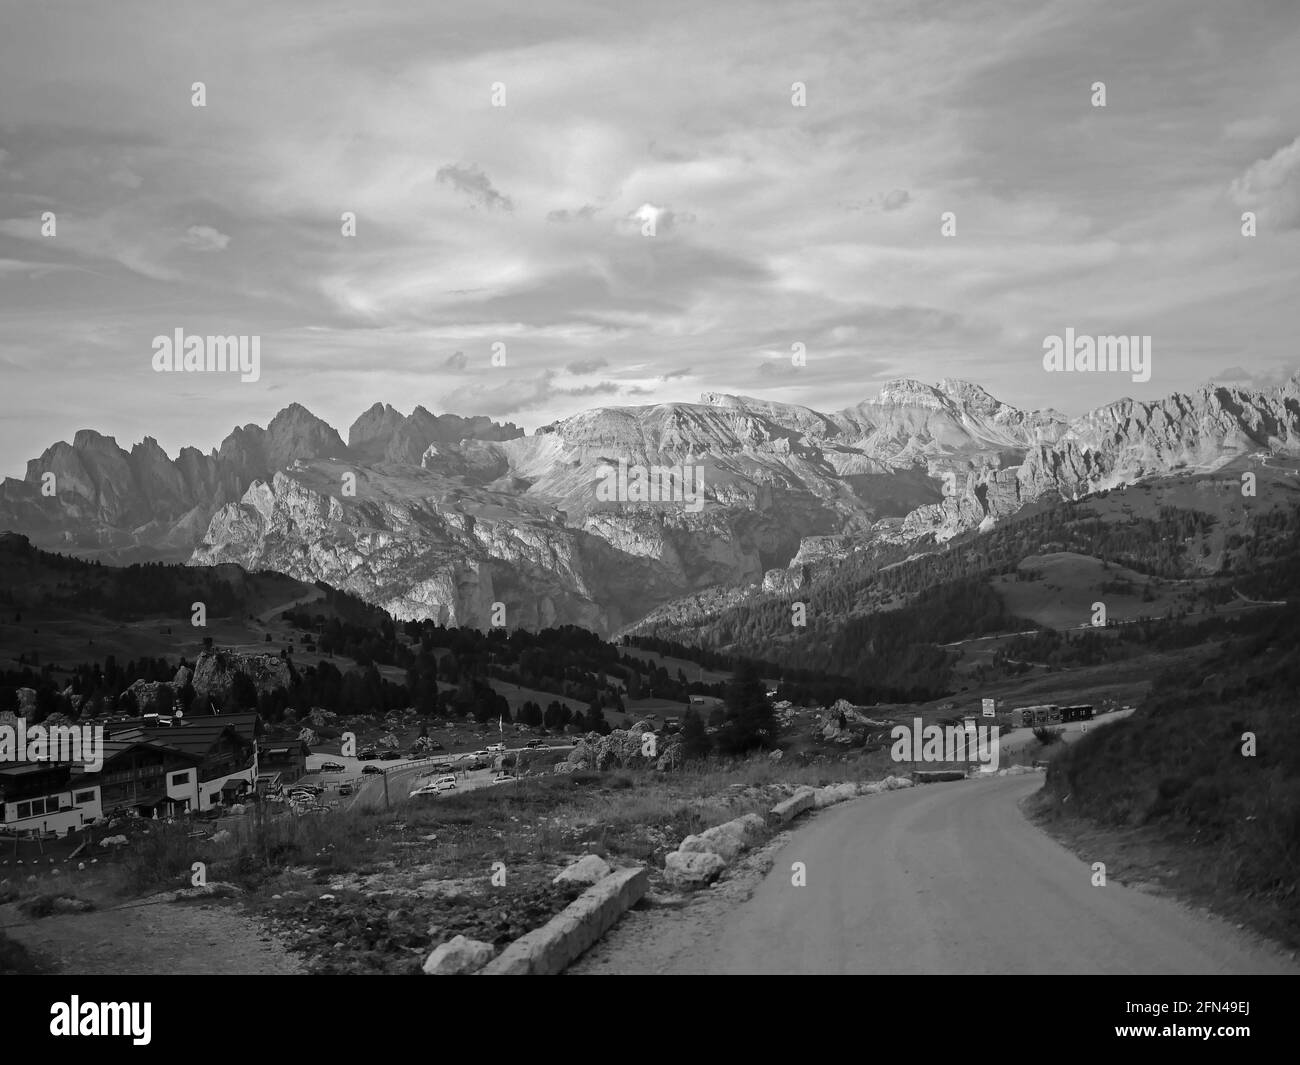 Una vista mozzafiato sulle Alpi del Trentino Alto Adige. Fotografia in bianco e nero della catena montuosa del Sassolungo. Foto Stock